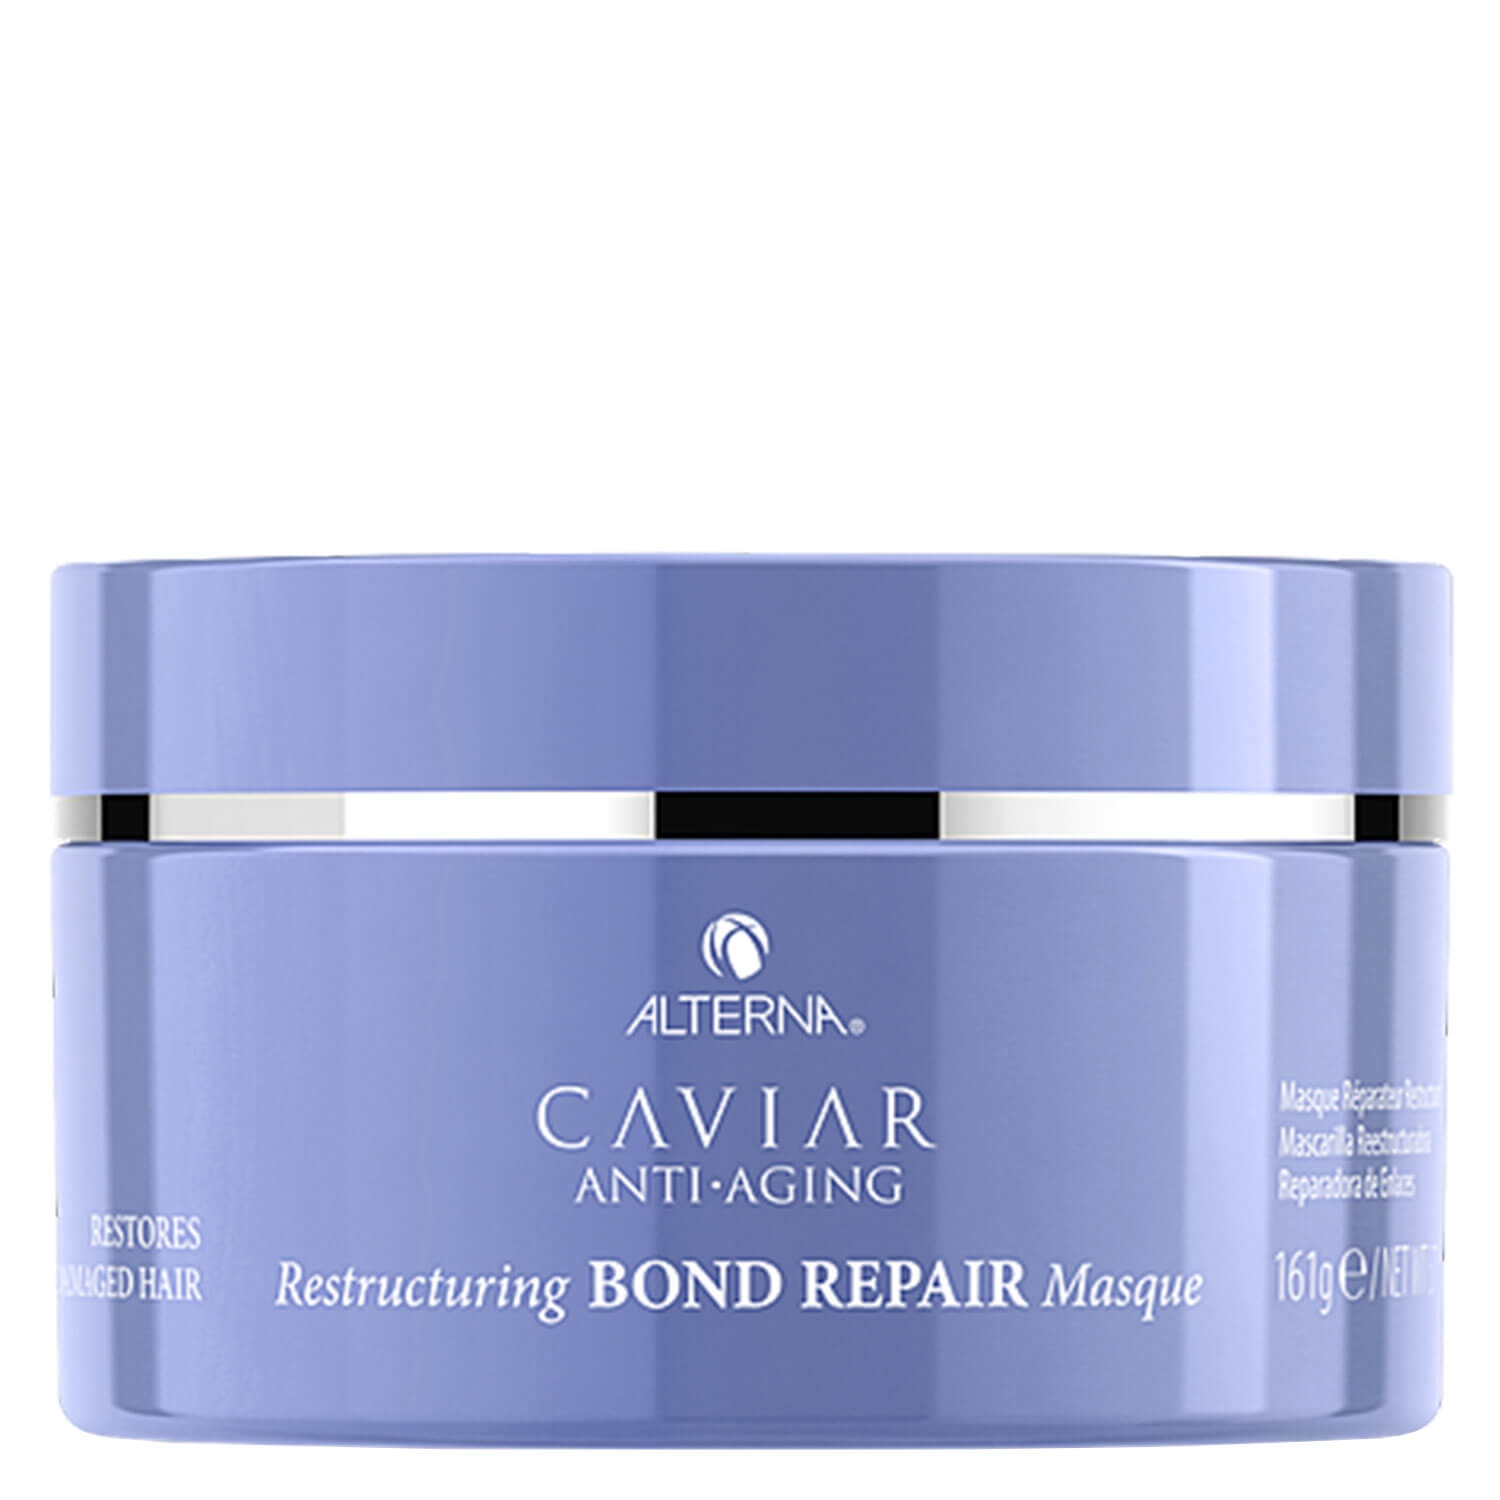 Produktbild von Caviar Restructuring Bond Repair - Masque